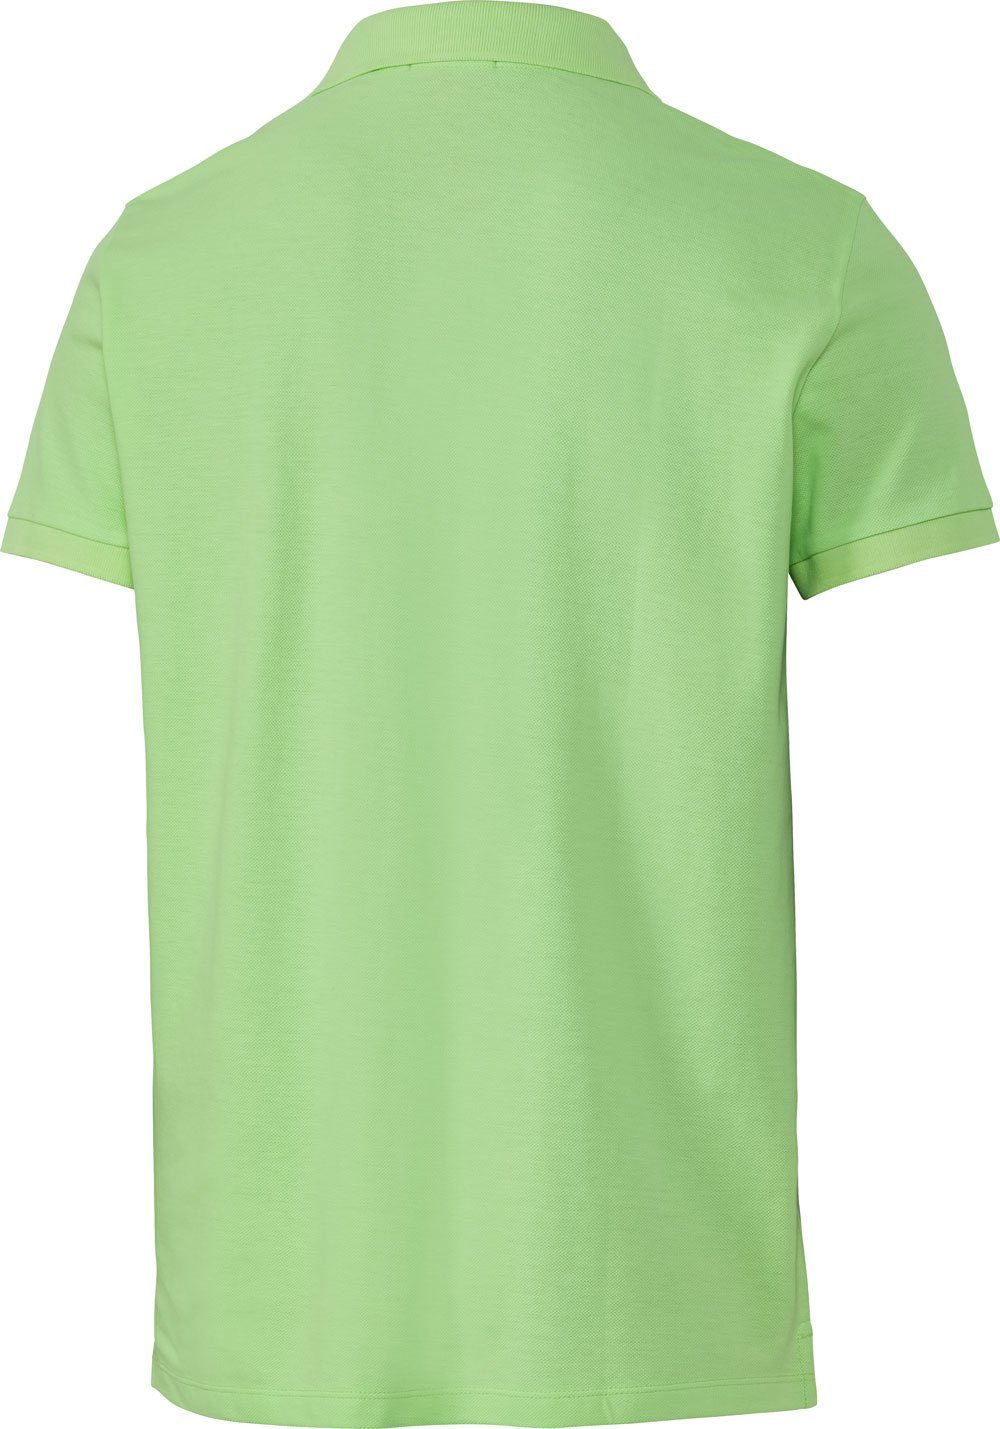 Chiemsee aus reinem hellgrün Baumwoll-Piqué Poloshirt